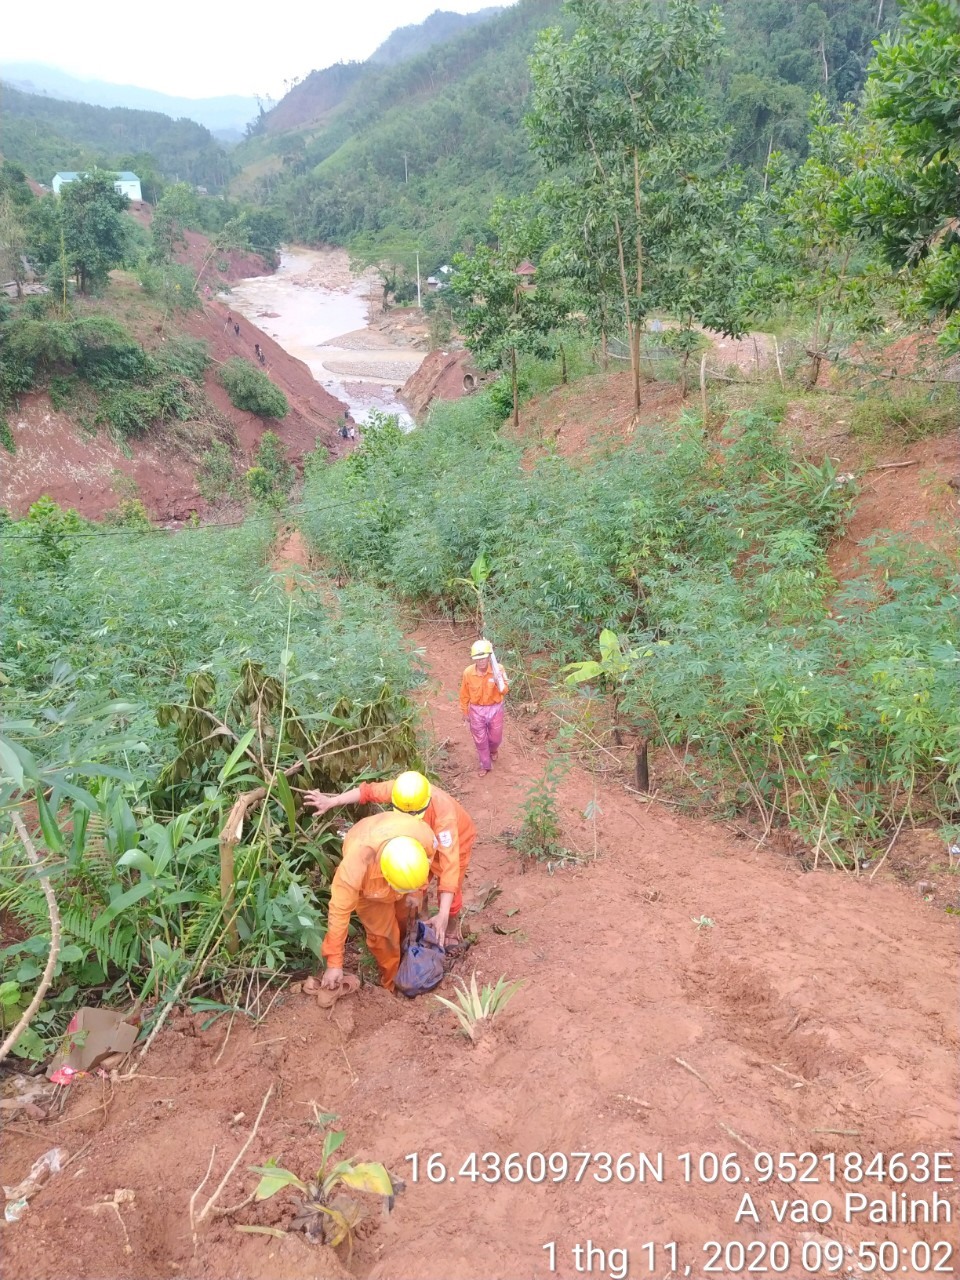 Công nhân Công ty Điện lực Quảng Trị đã cùng với bà con hai thôn phải mất một ngày đi bộ khoảng 20 km đường rừng trong điều kiện sạt lở hết sức khó khăn